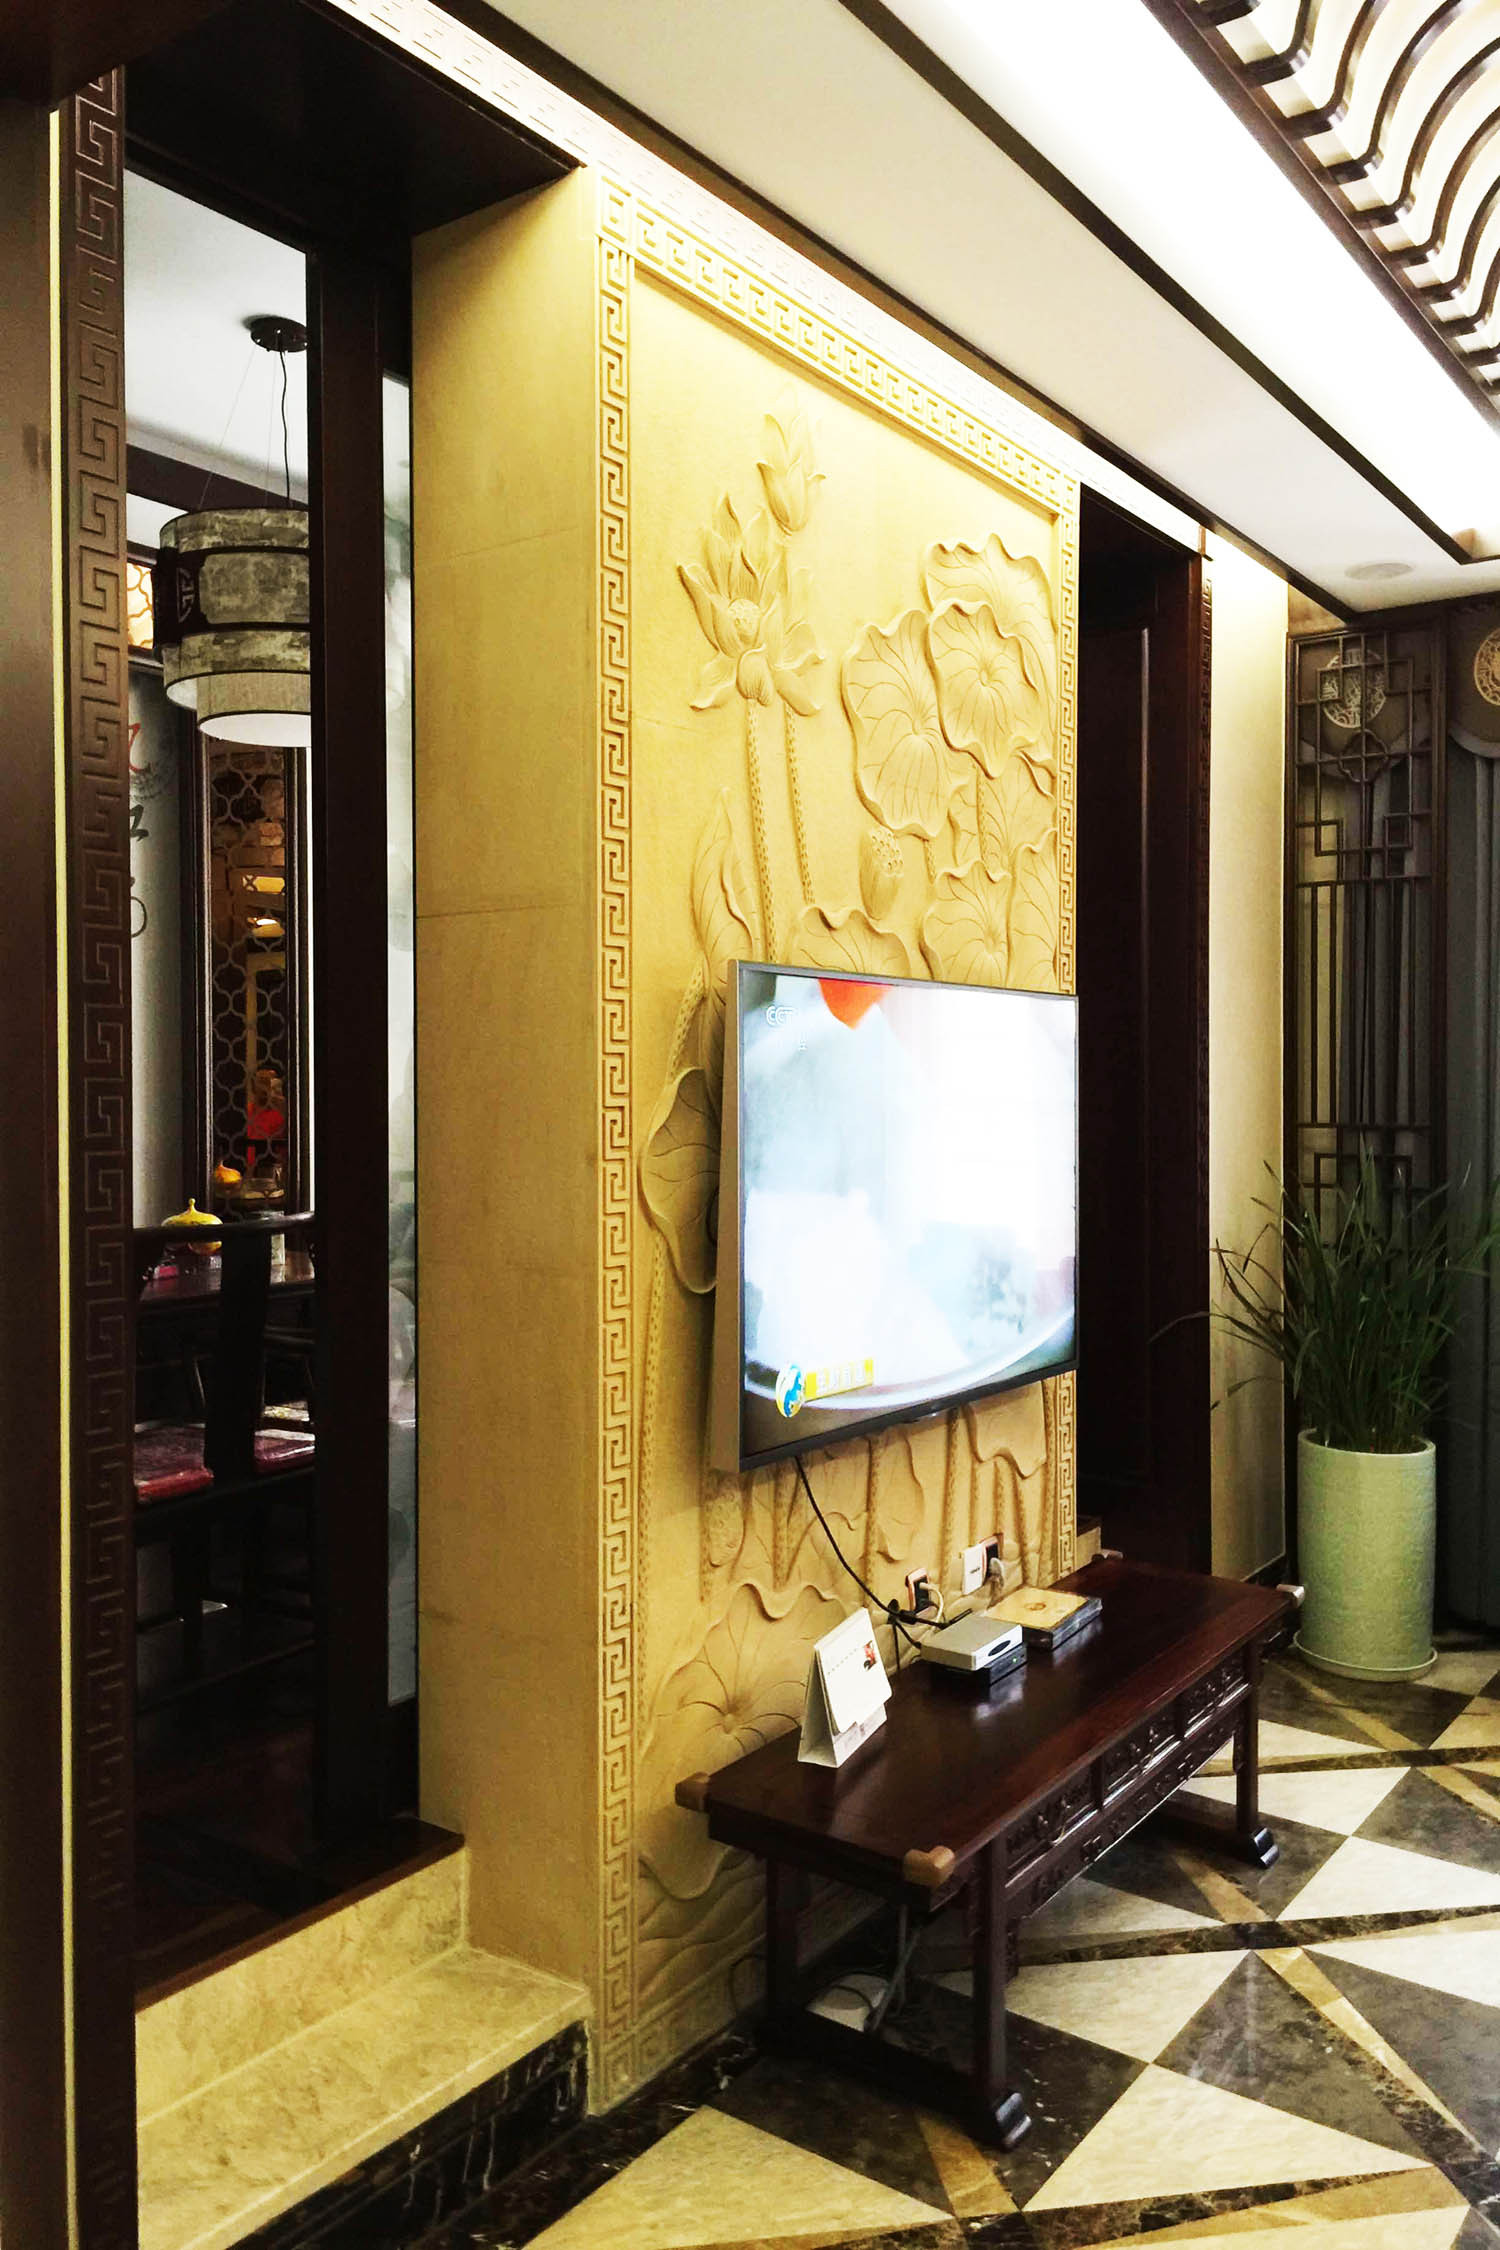 中式别墅装修电视墙图片